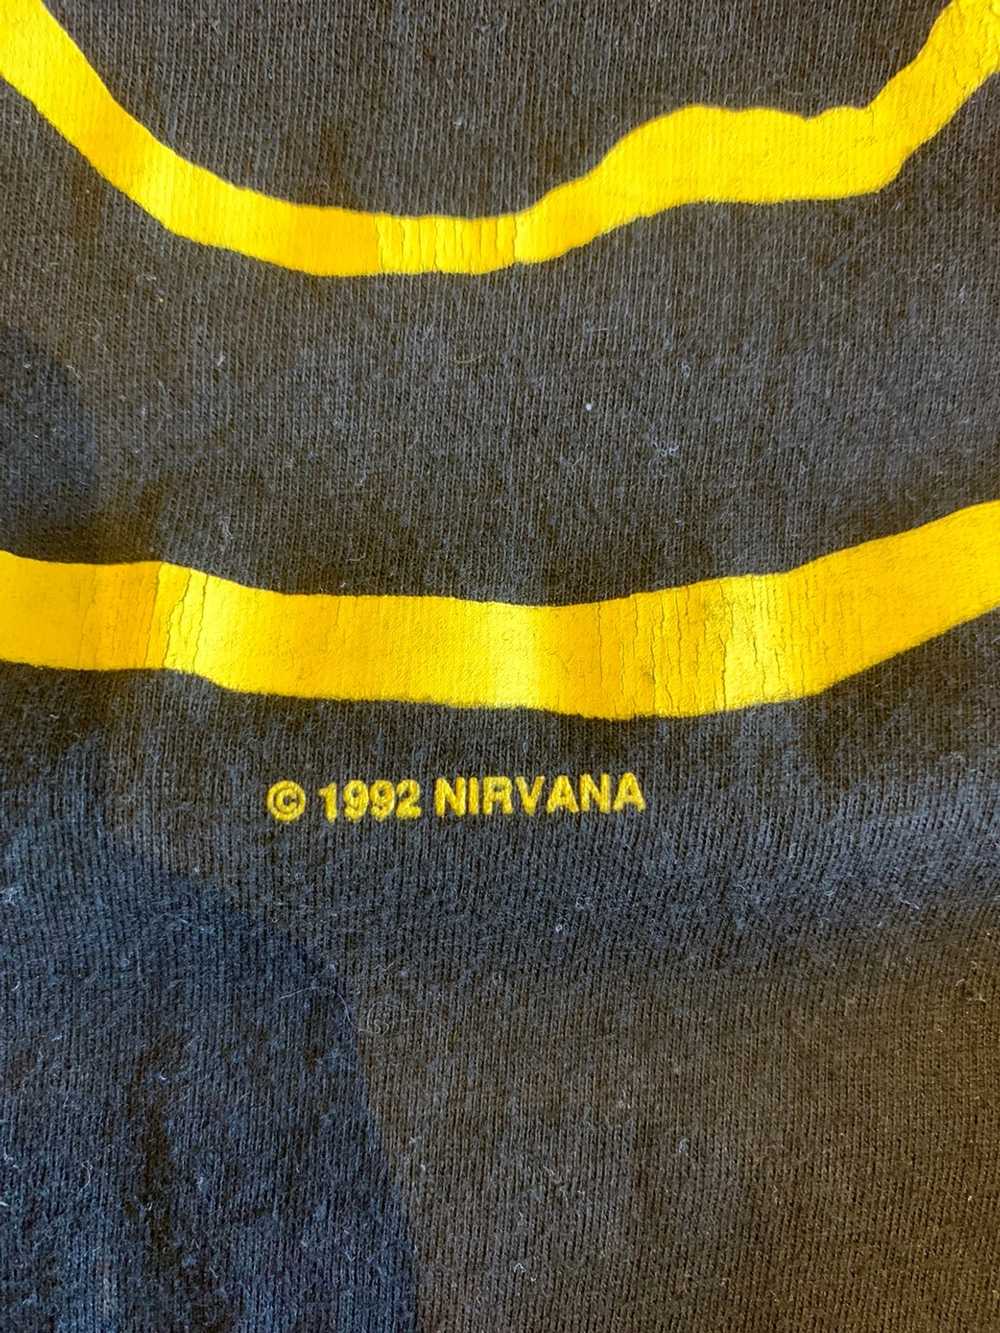 Nirvana × Vintage Vintage Nirvana Tee - image 4